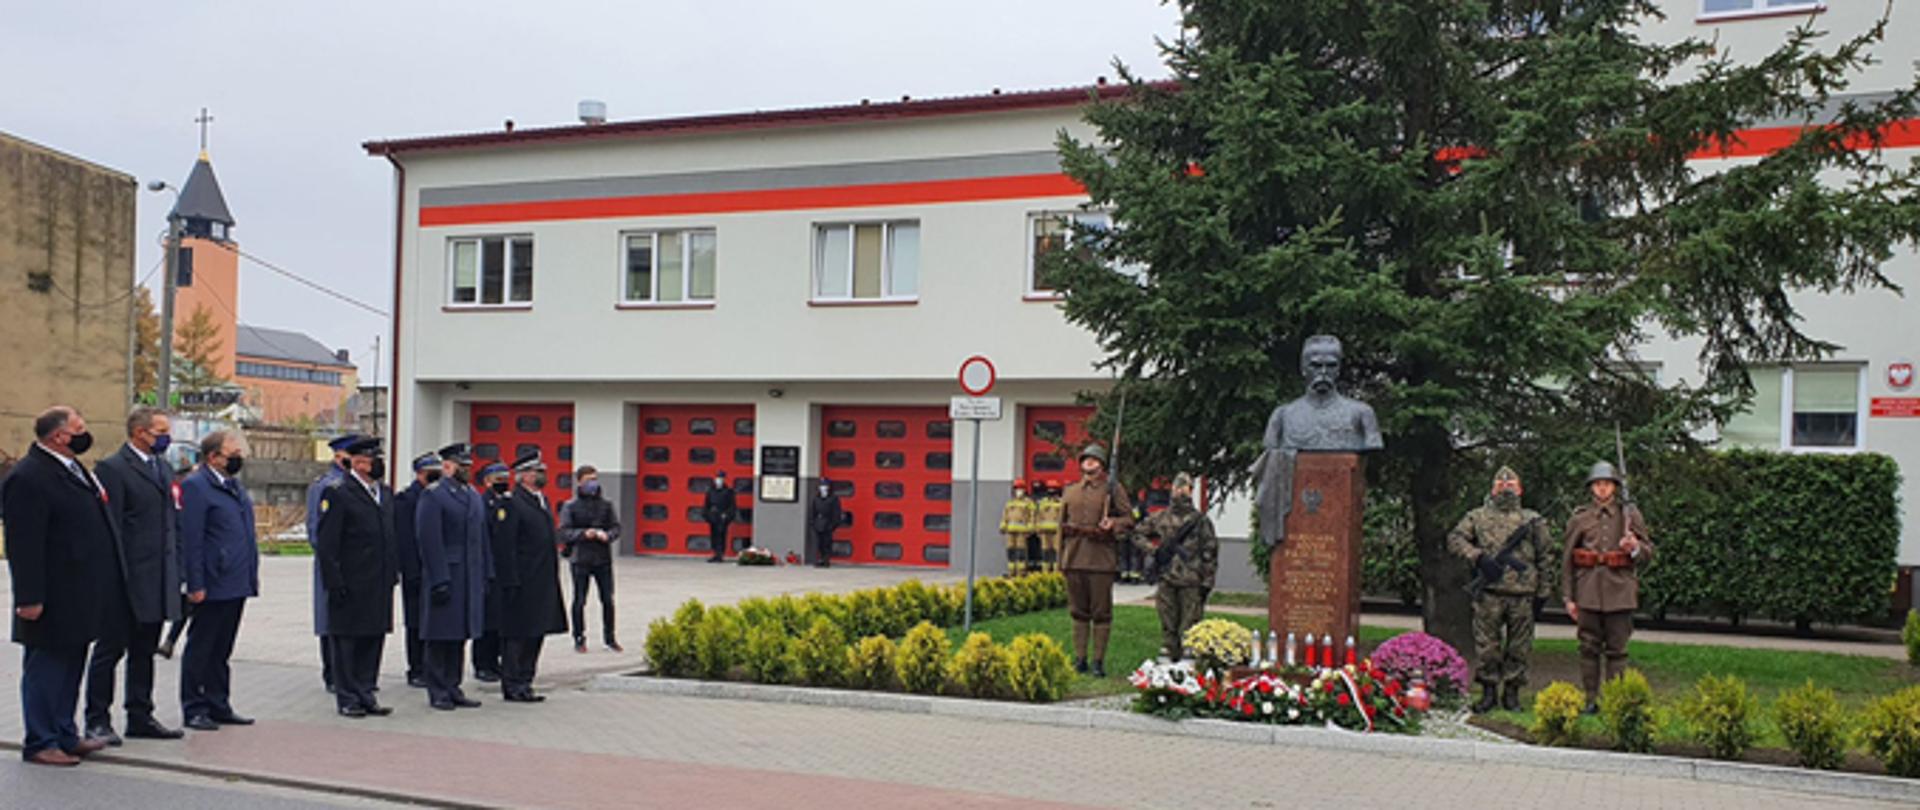 Delegacja przedstawicieli samorządów i służb przygotowuje się do złożenia wiązanek kwiatów pod popiersiem marszałka Józefa Piłsudskiego, przed Komendą Powiatową PSP w Sochaczewie.